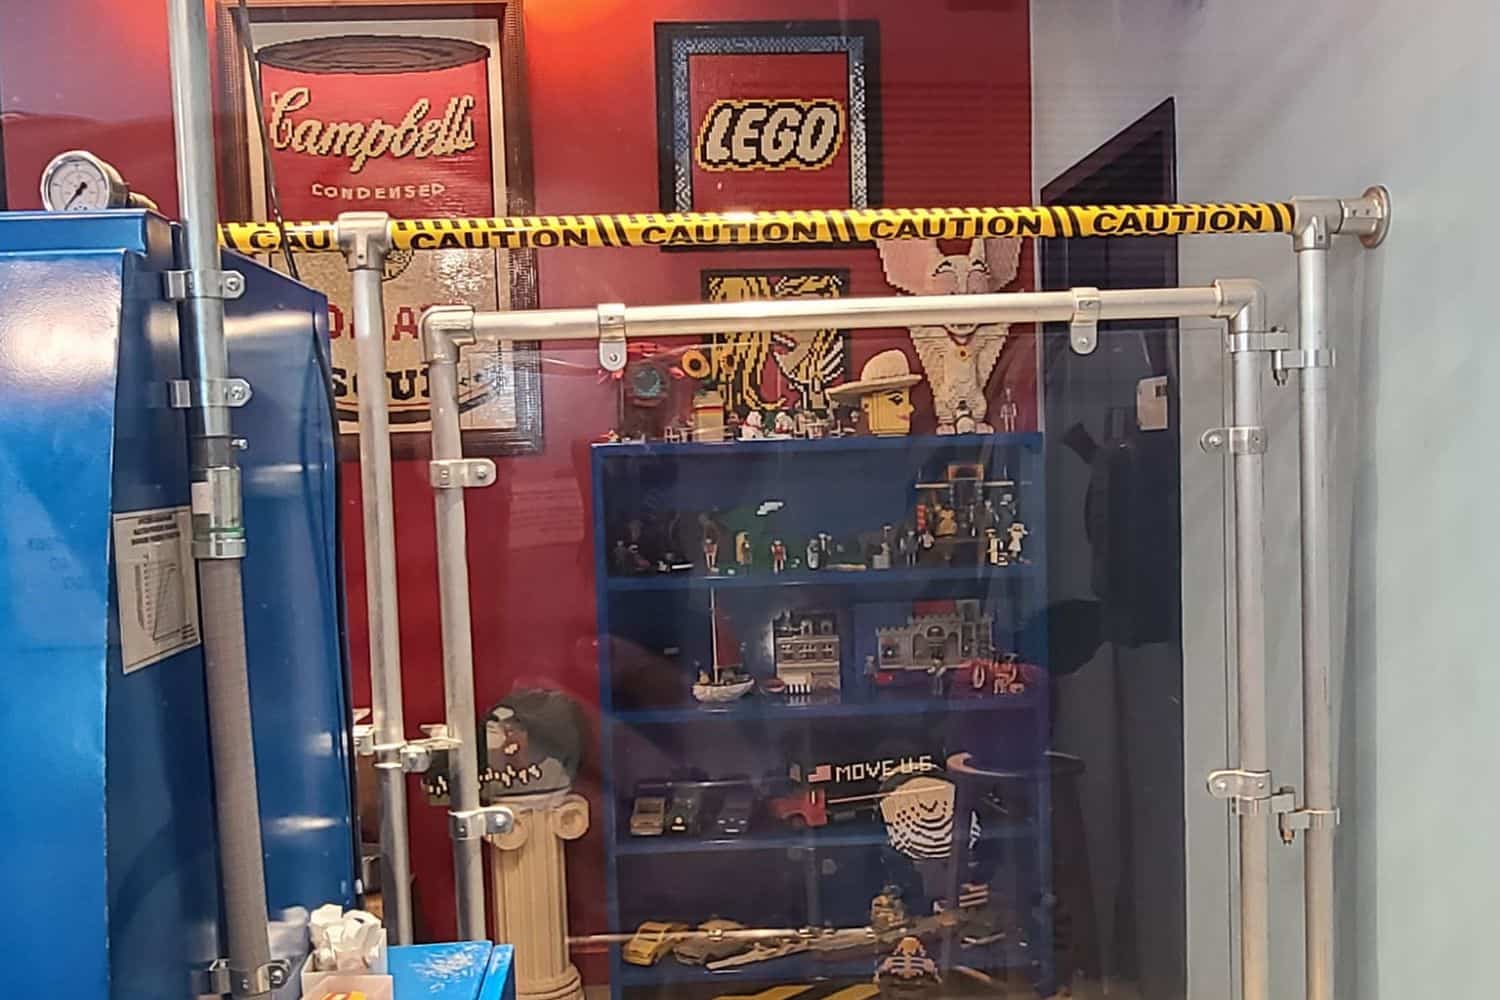 Where is LEGO Manufactured? - The Origins: LEGO in Billund, Denmark